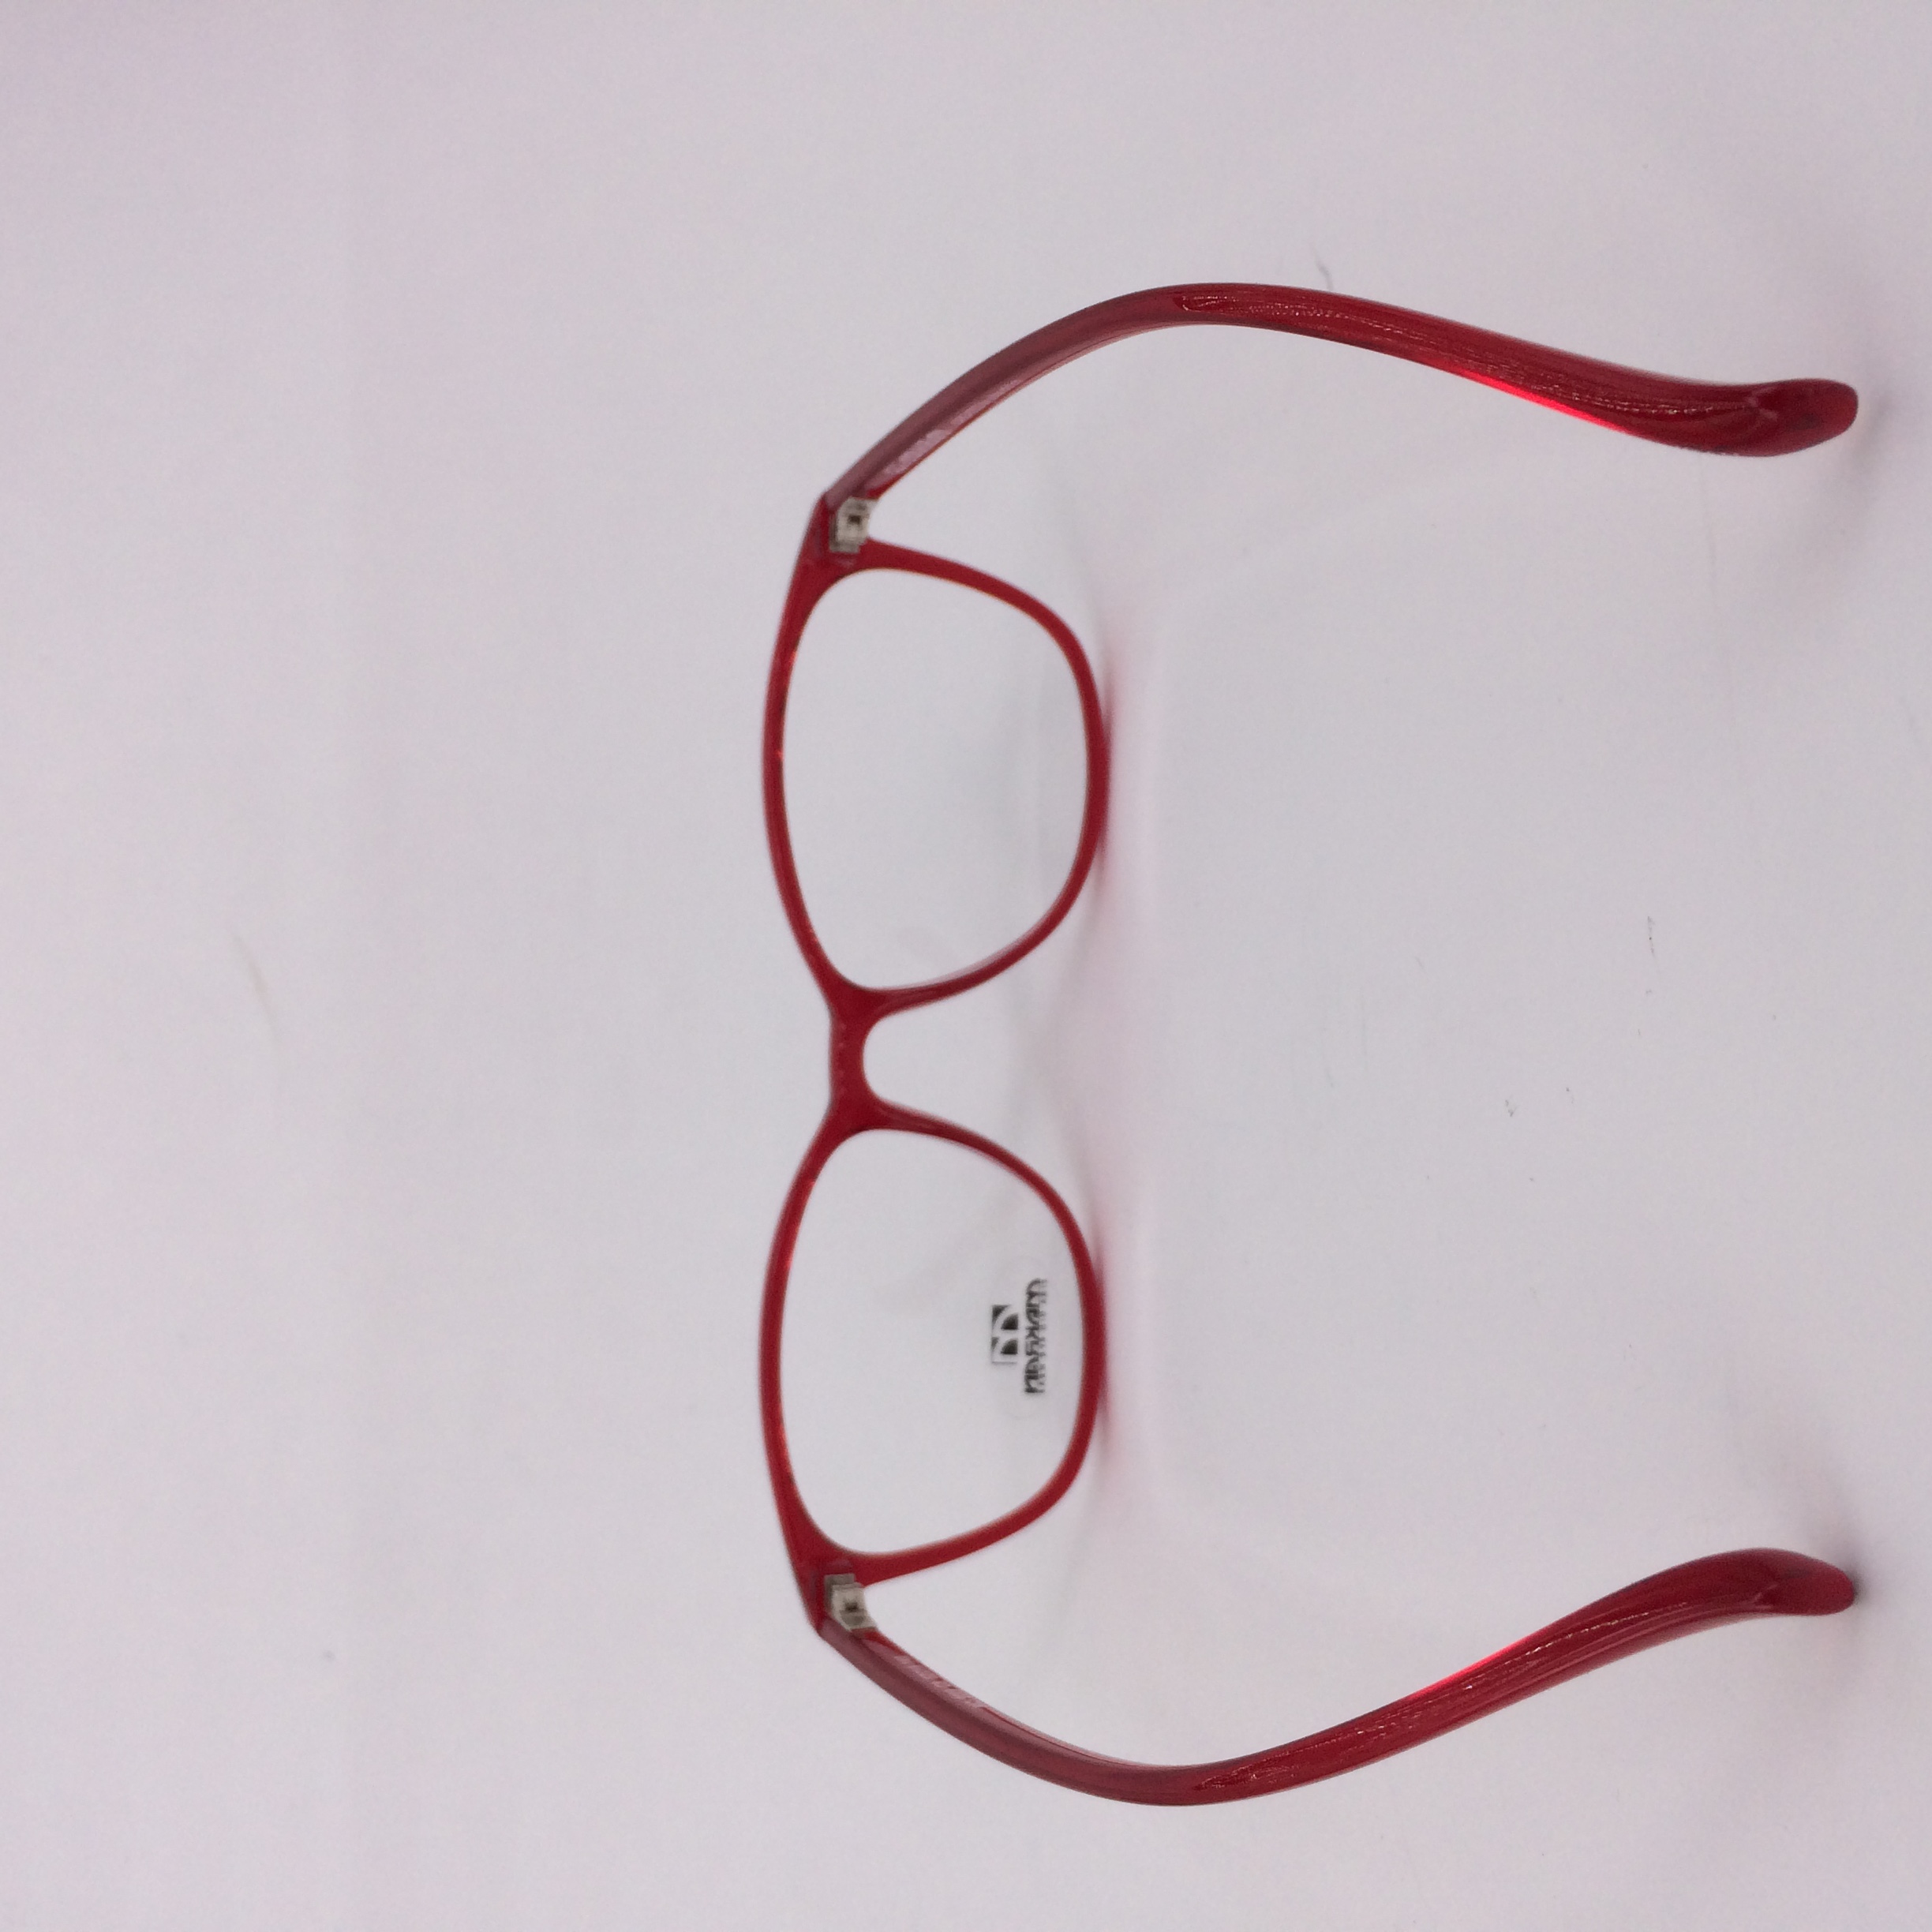 فریم عینک طبی مکران مدل  9009 c8 -  - 4